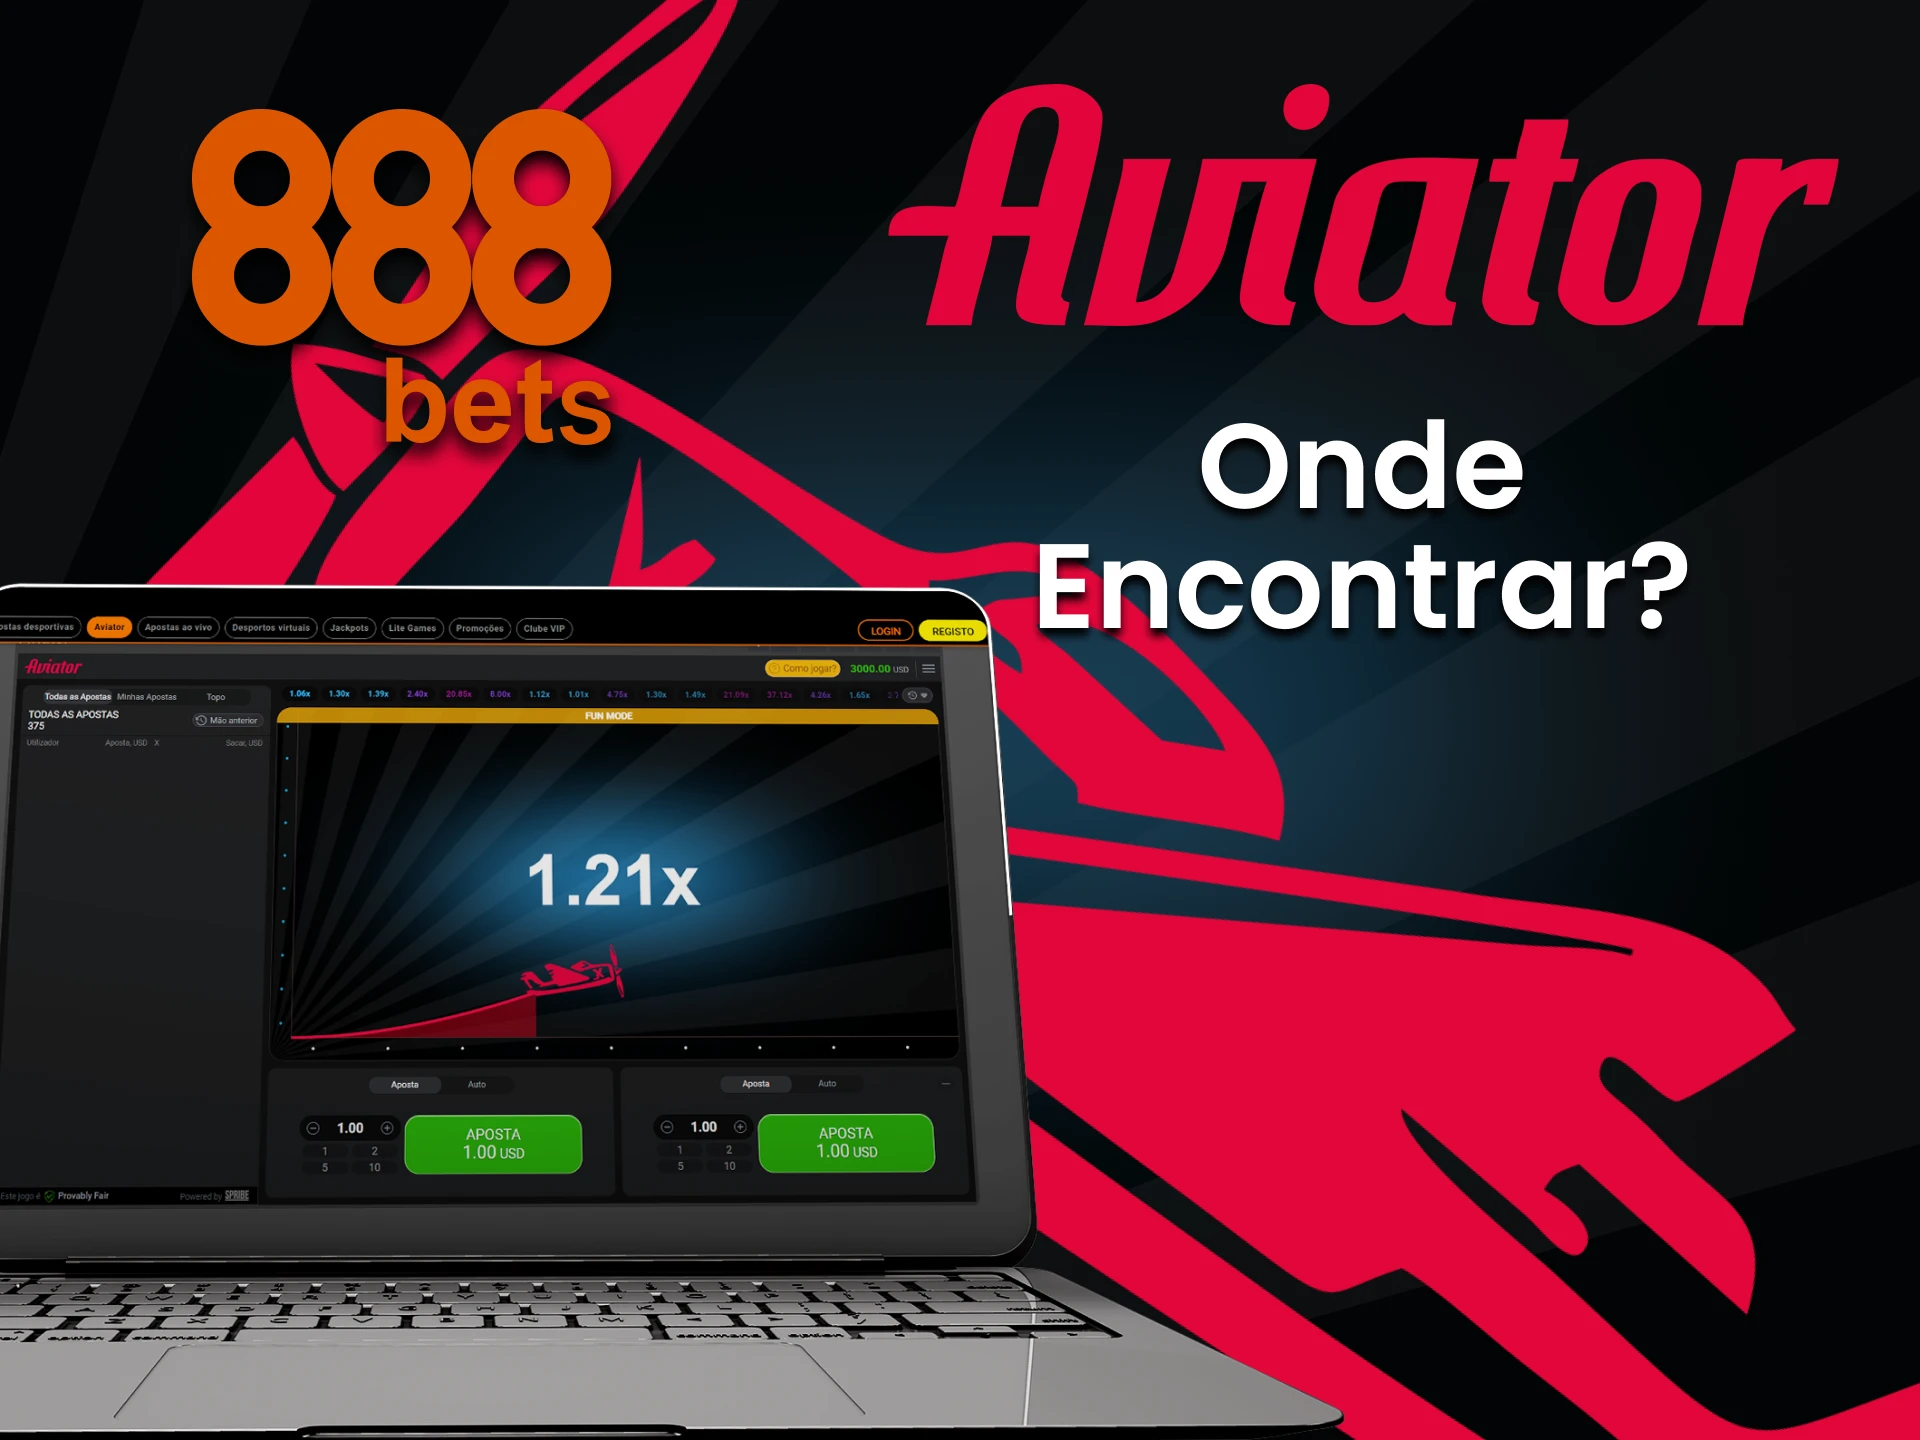 Encontre a seção Aviator no site da 888bets.